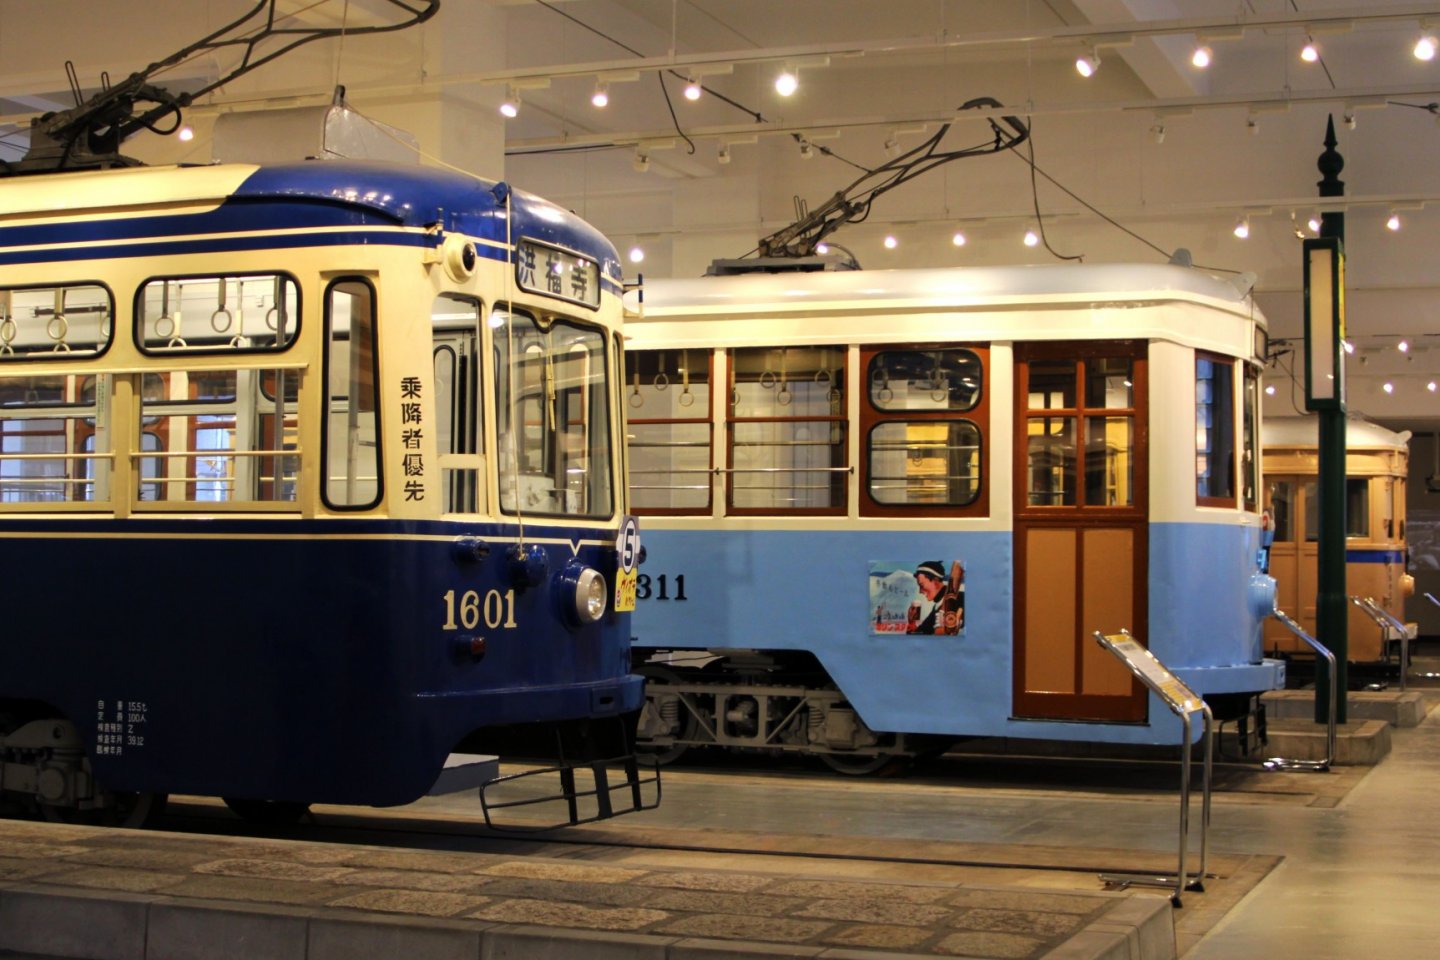 Beberapa tram dari tahun yang berbeda ditempatkan di museum ini